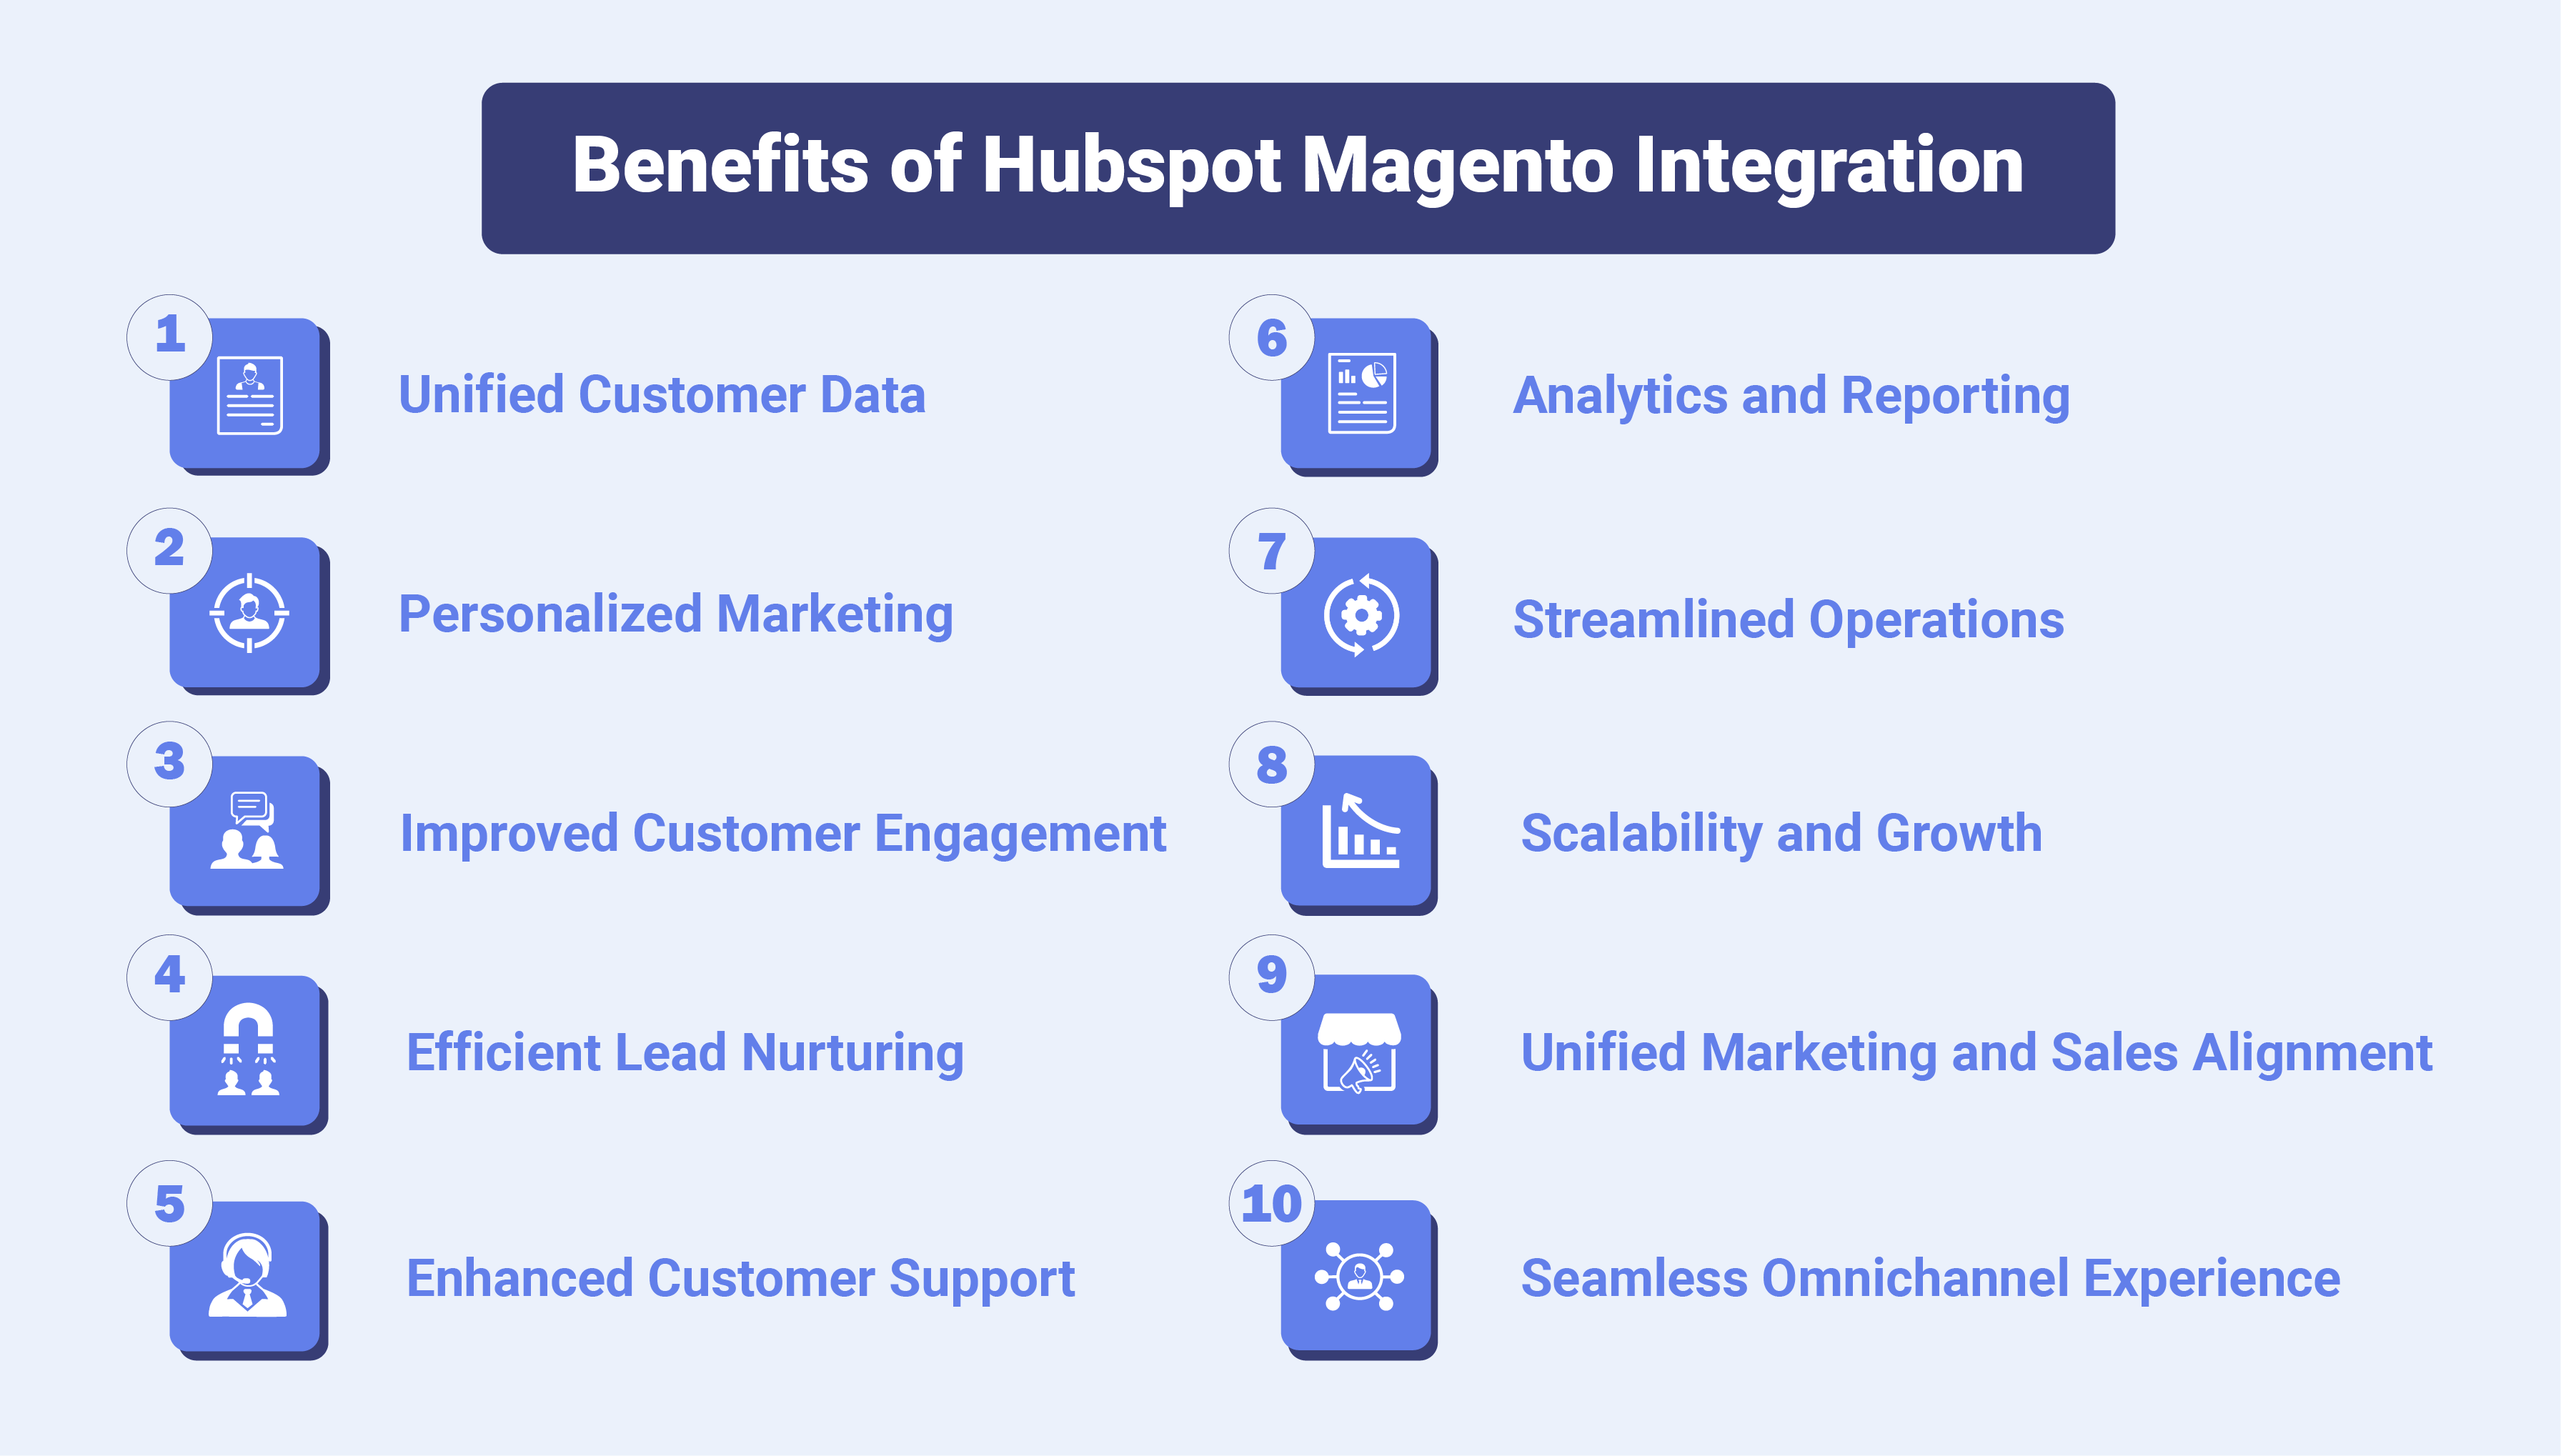 Benefits of Hubspot Magento Integration